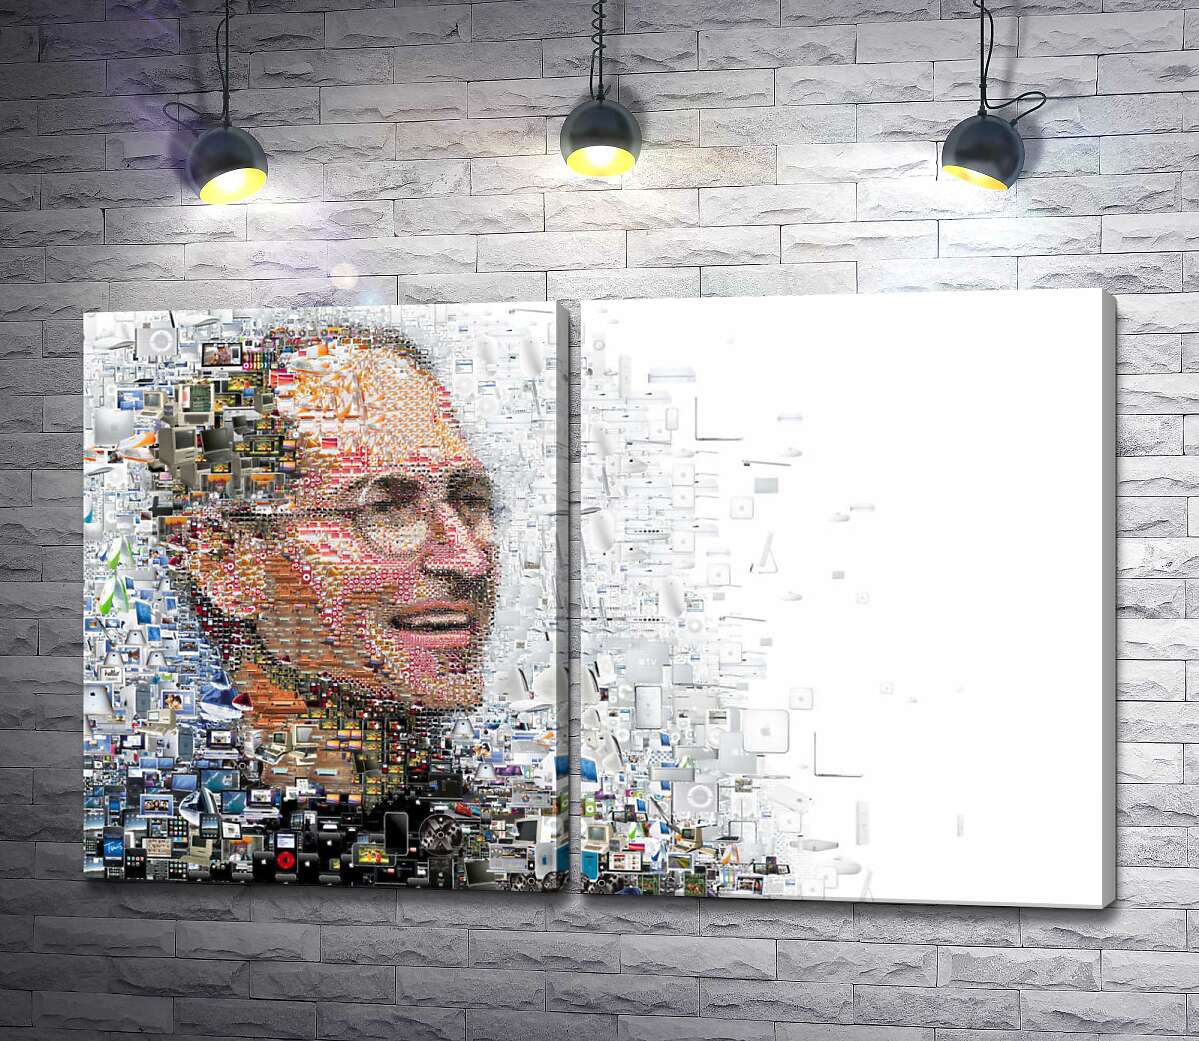 модульная картина Стив Джобс (Steve Jobs) из тысячей изображений гаджетов